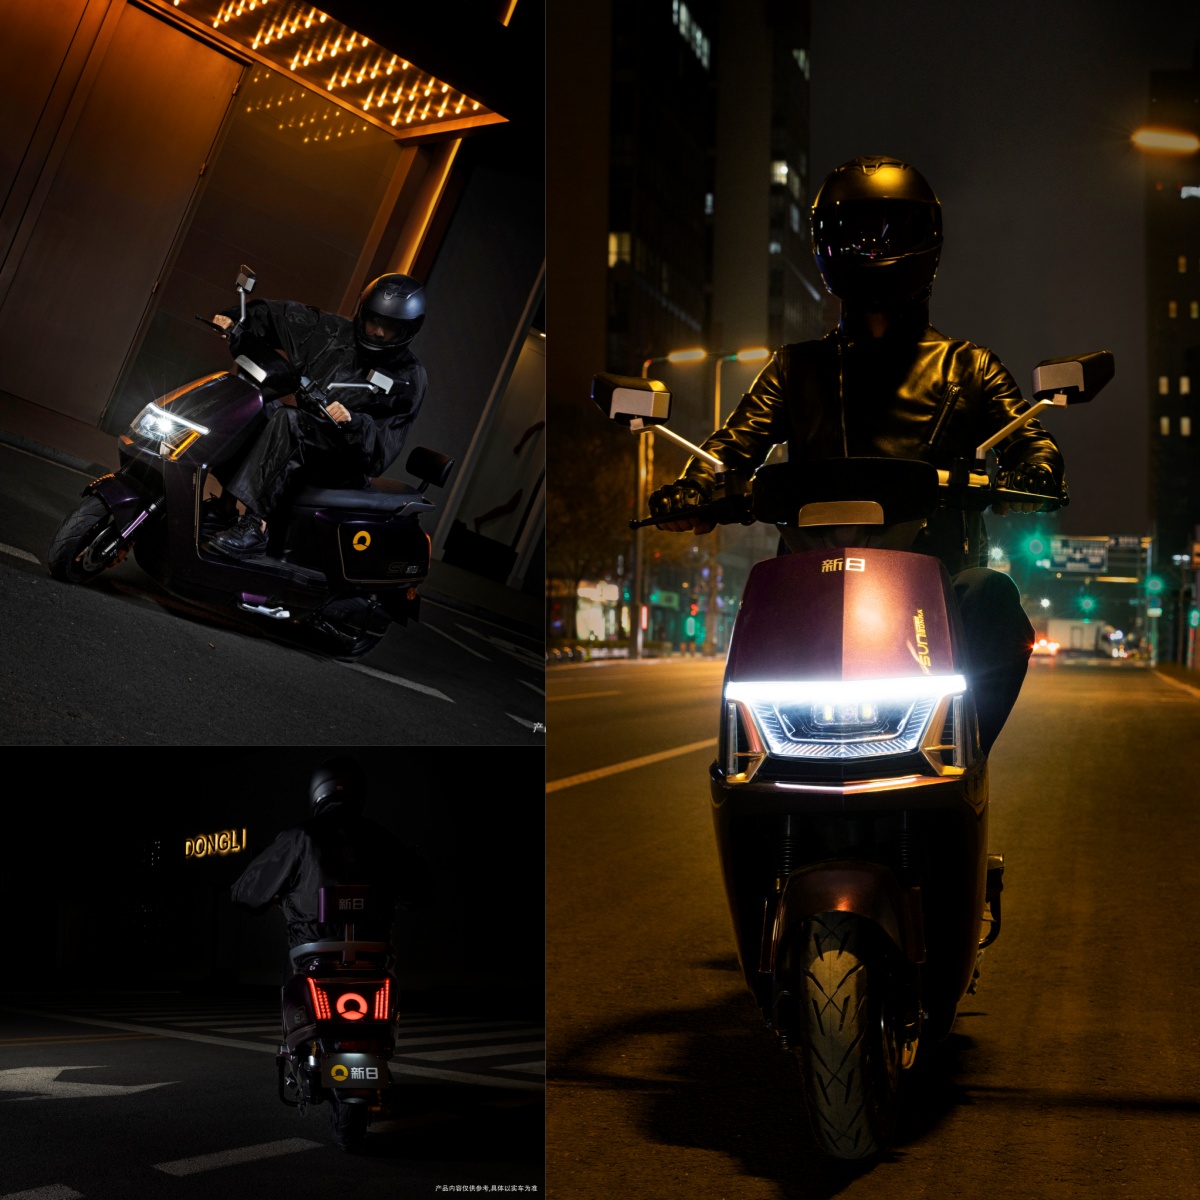 夜晚开着灯的摩托车

中度可信度描述已自动生成